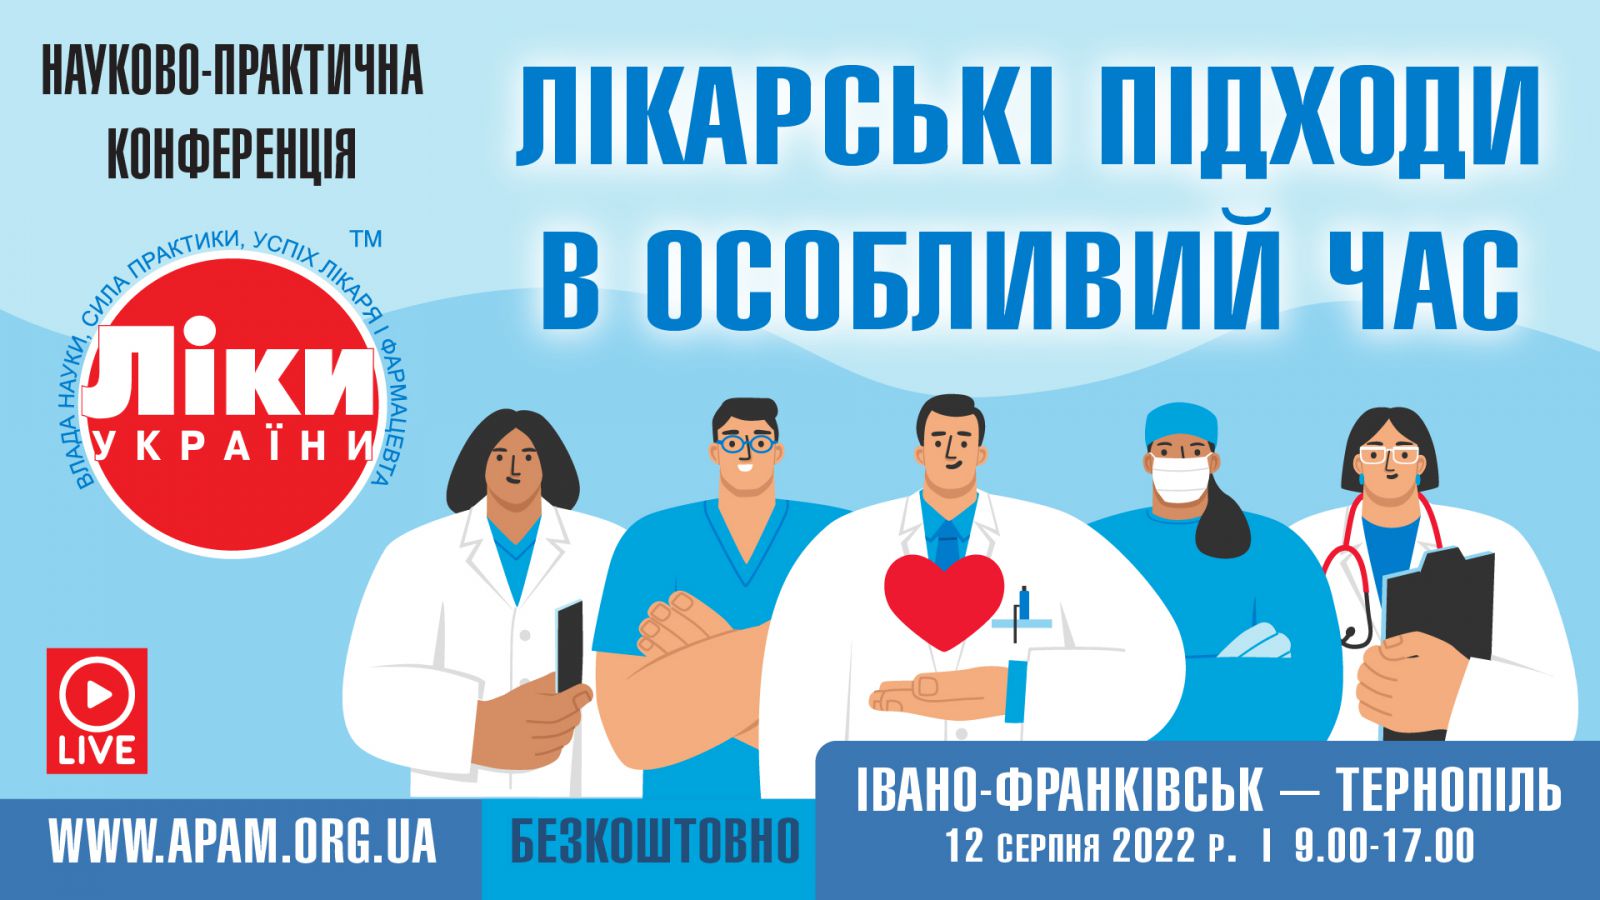 Науково-практична конференція «Ліки України: лікарські підходи в особливий час»